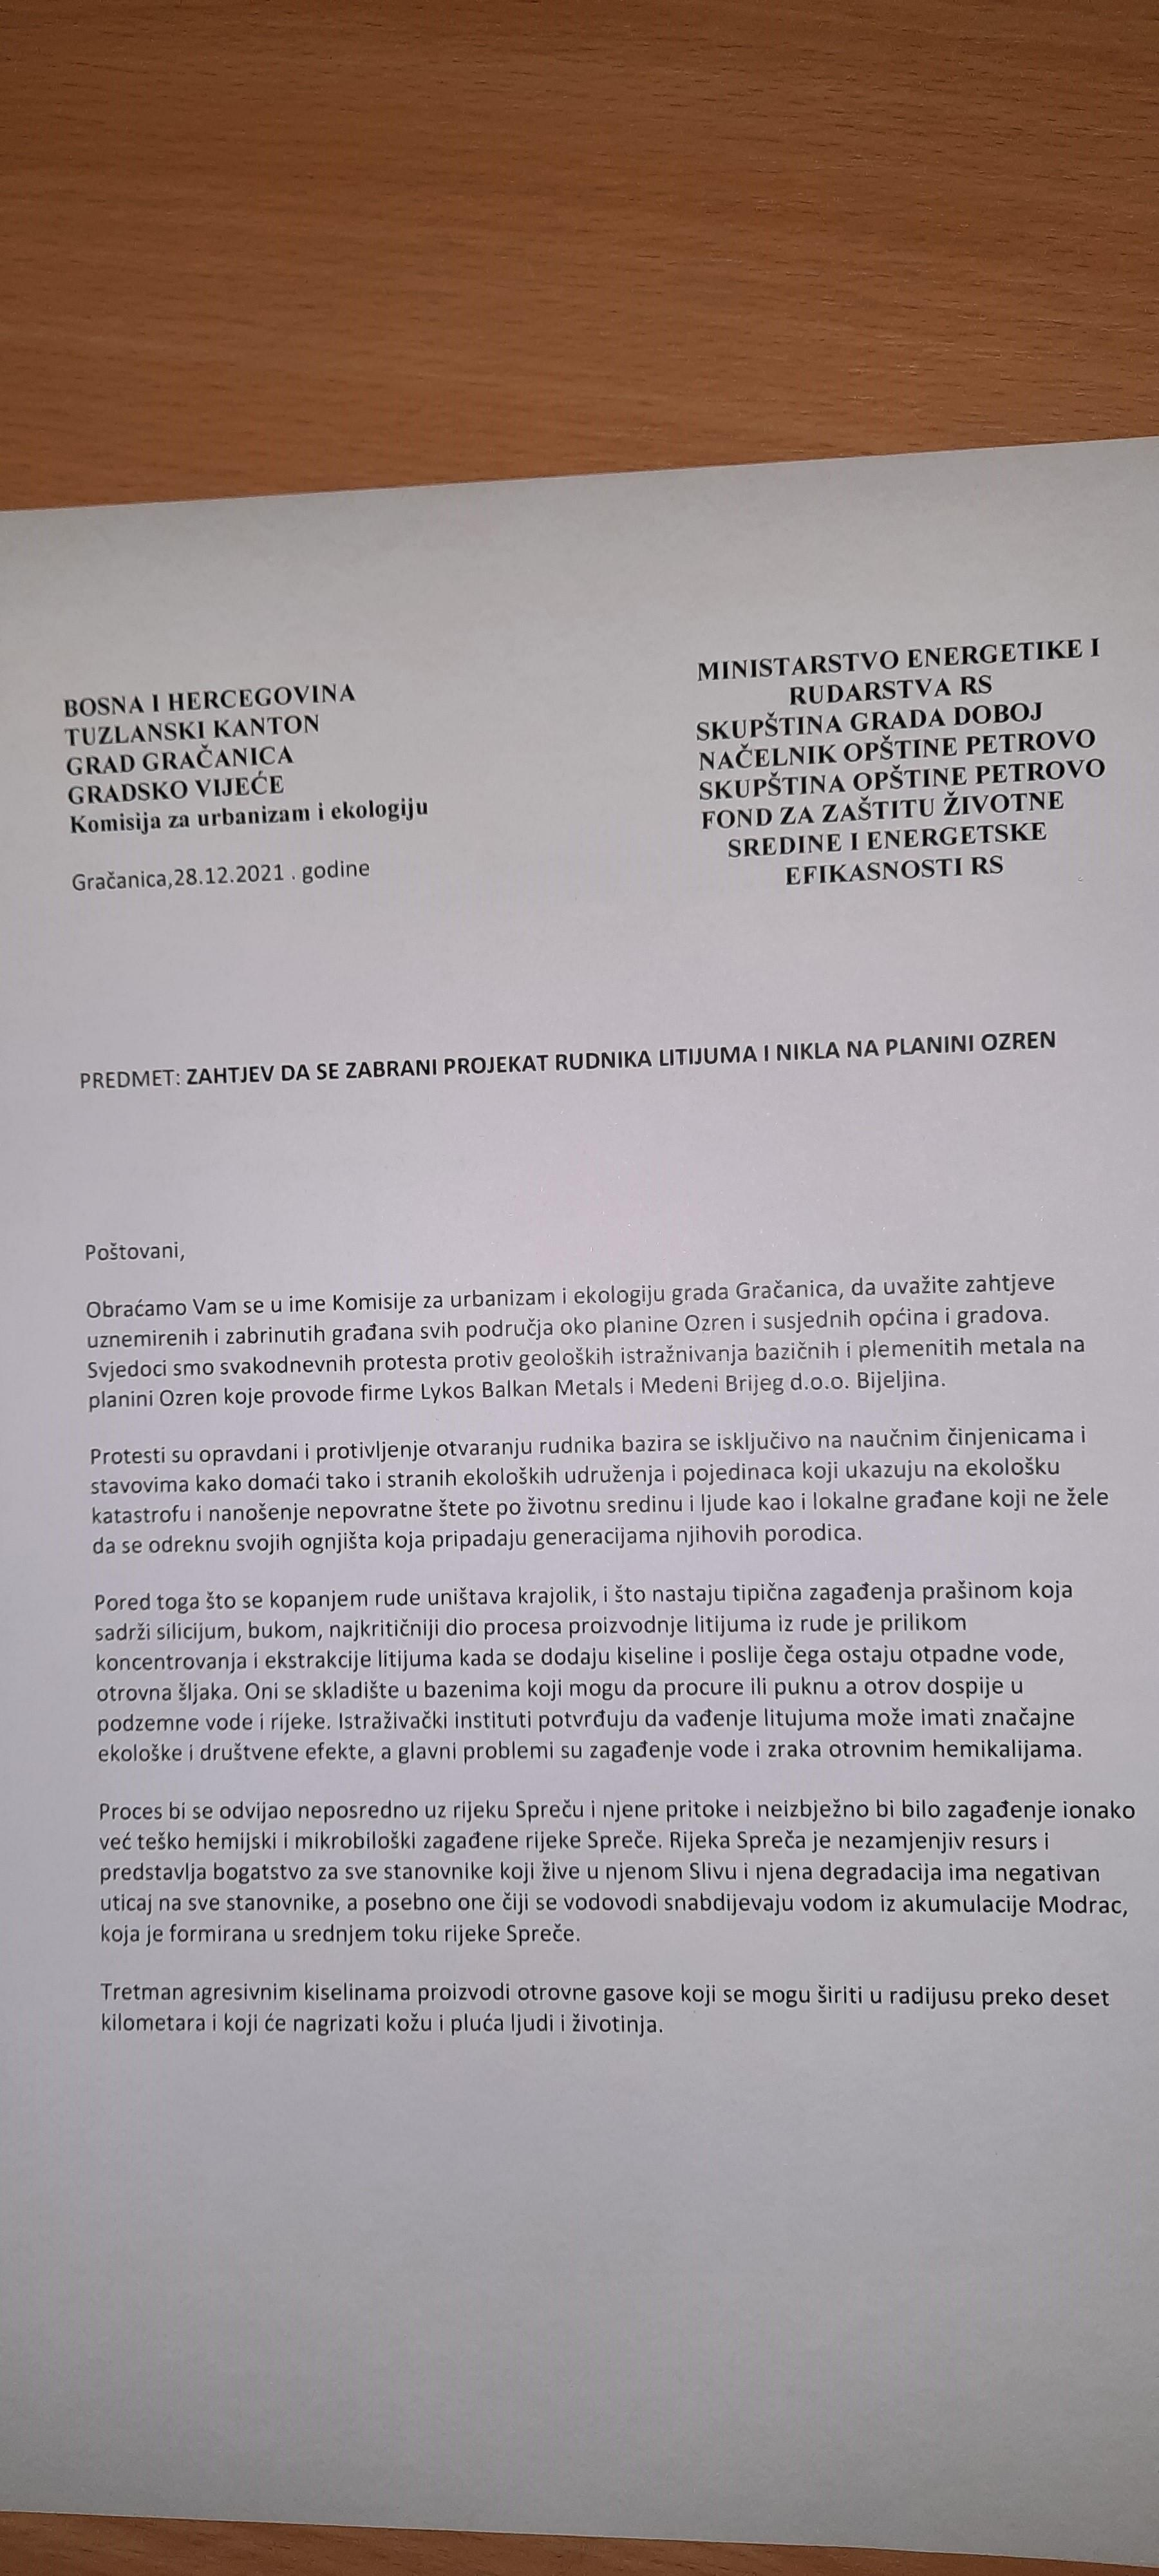 Zahtjev upućen s jučerašnje sjednice Gradskog vijeća Gračanica - Avaz